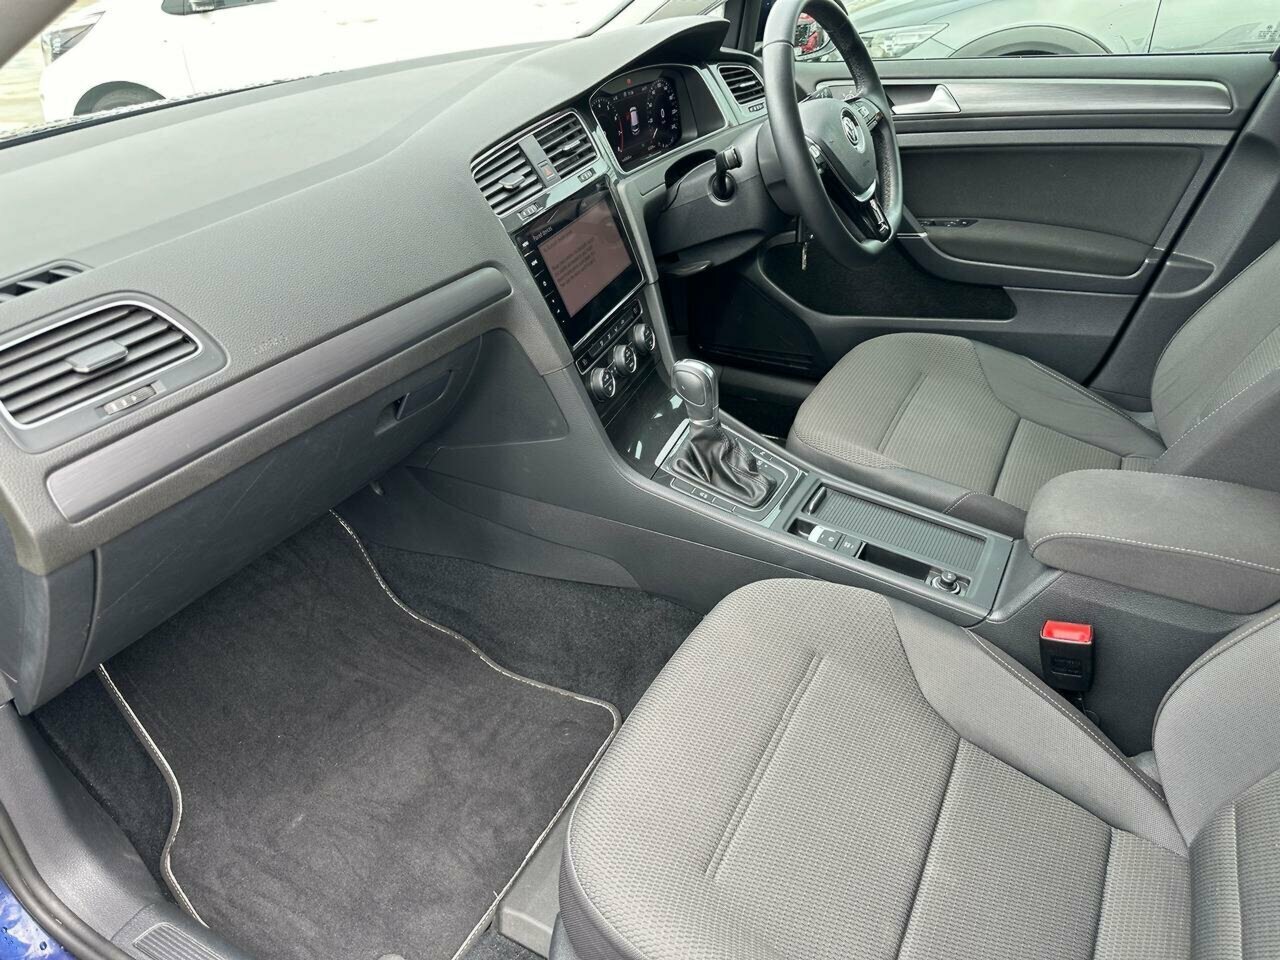 2017 Volkswagen Golf 7.5 MY18 110TSI DSG Comfortline Hatch Image 13